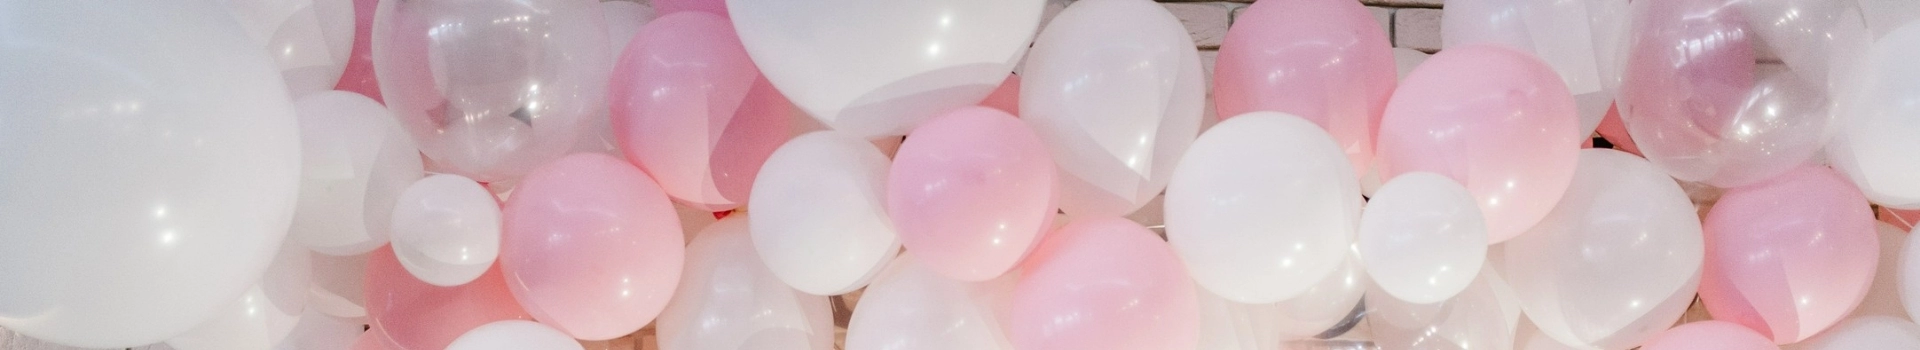 balony białe i różowe